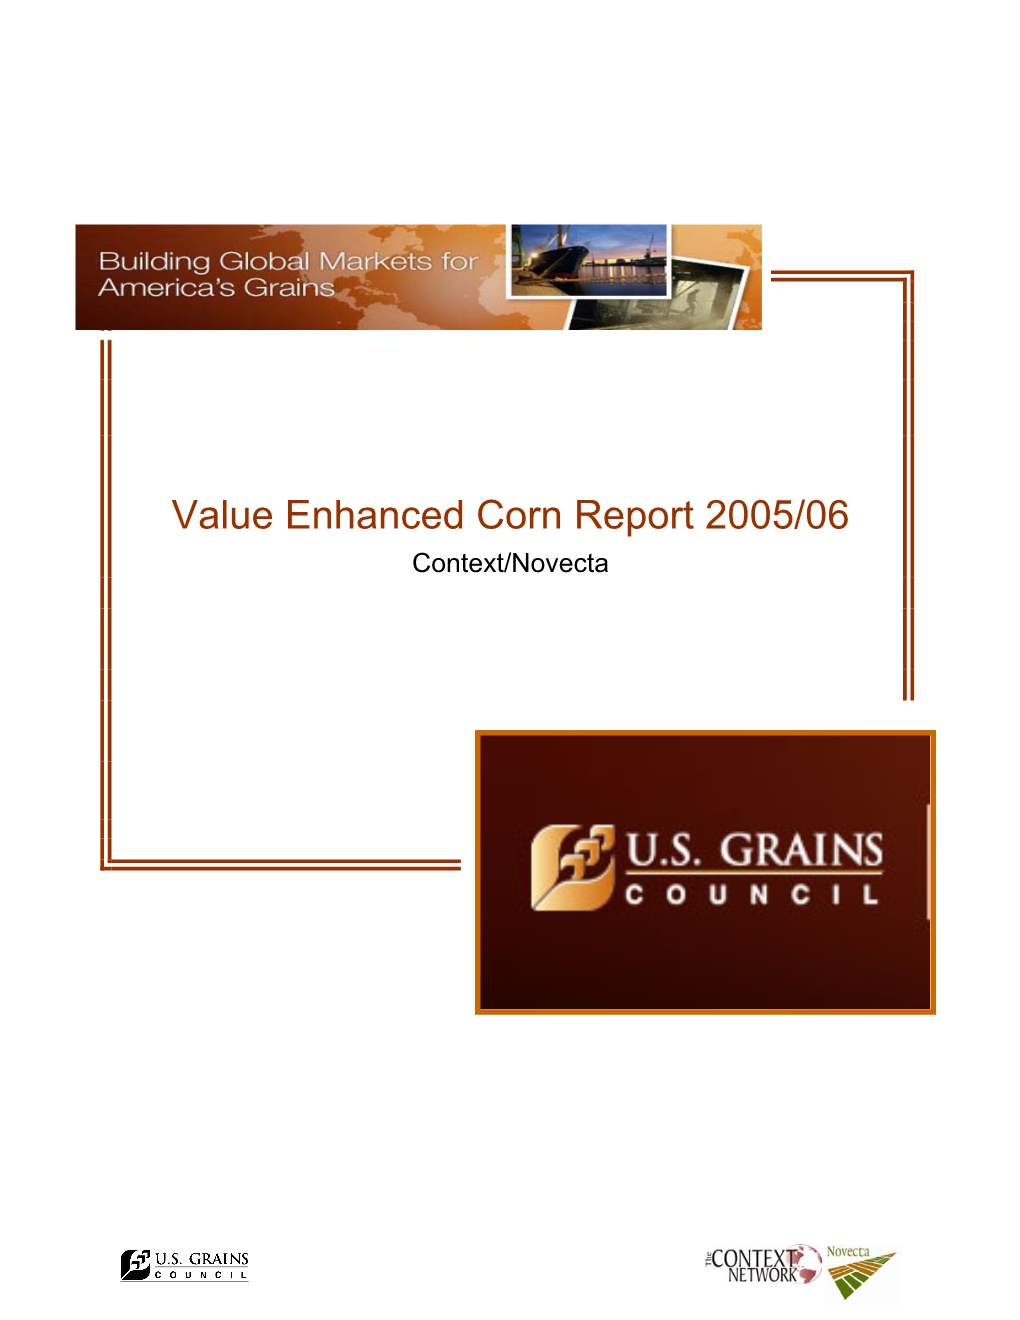 Value Enhanced Corn Report 2005/06 Context/Novecta